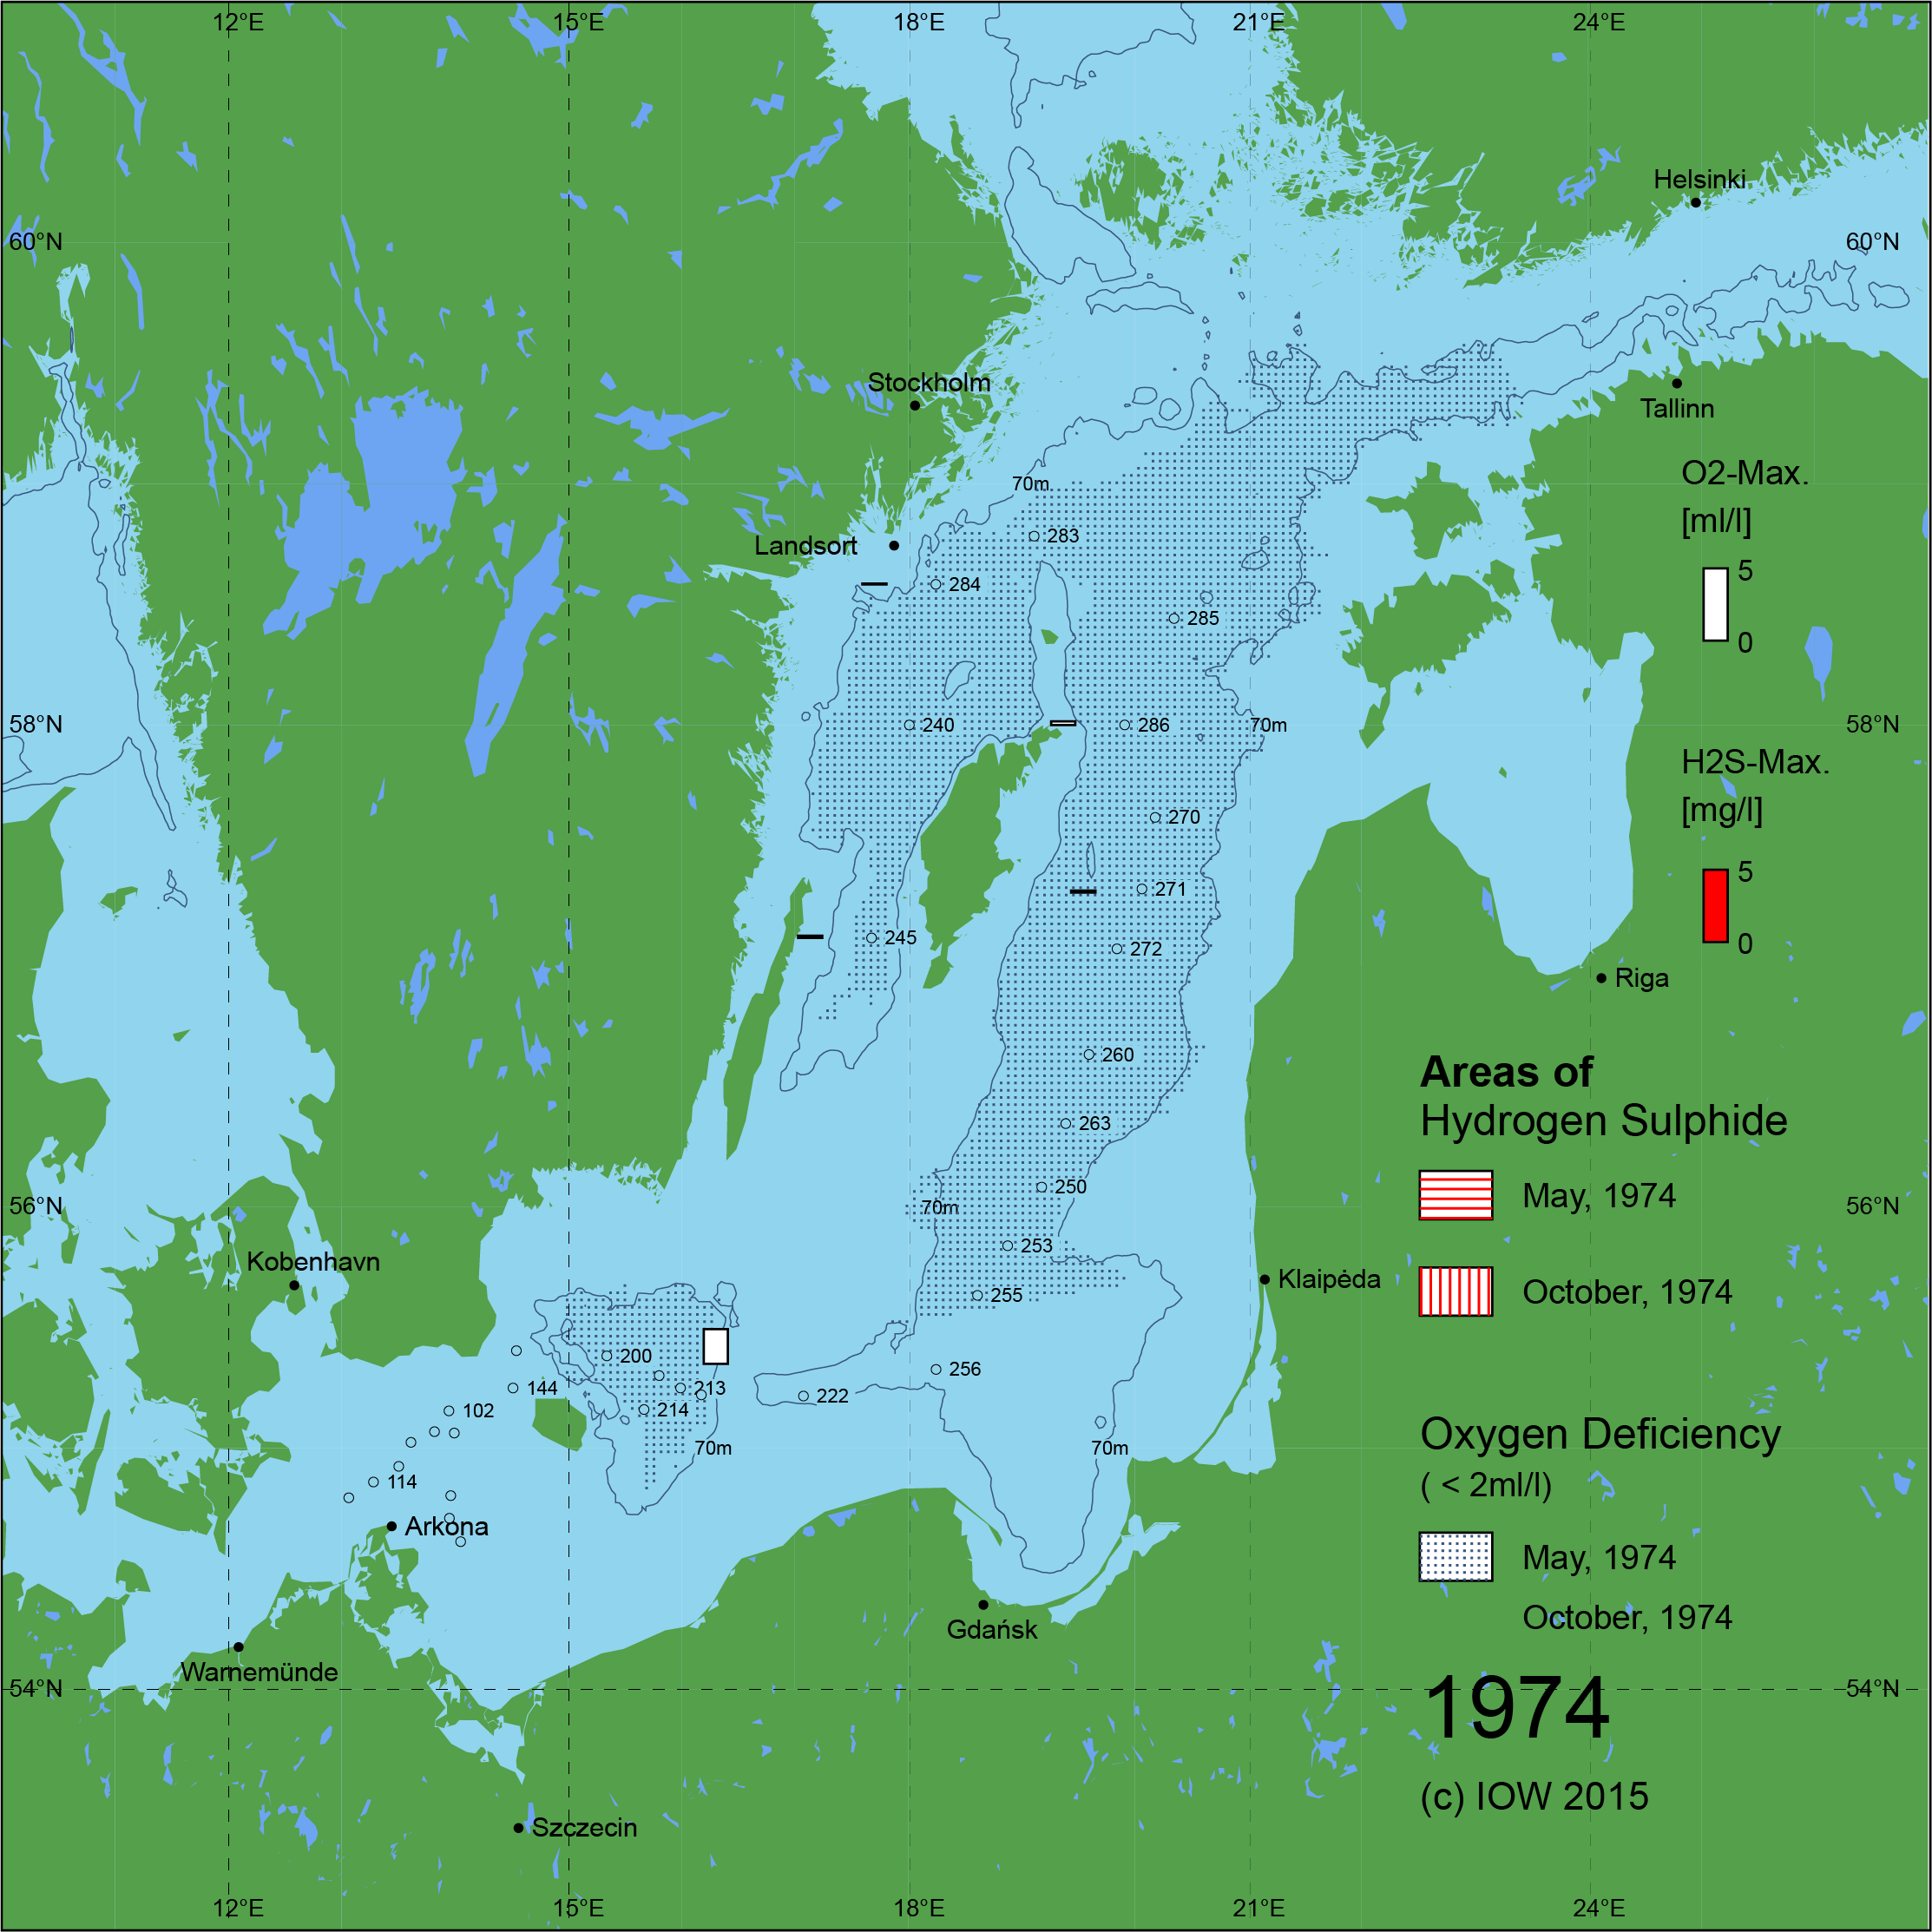 Sauerstoffarme und sauerstofffreie Gebiete in der Ostsee - 1974